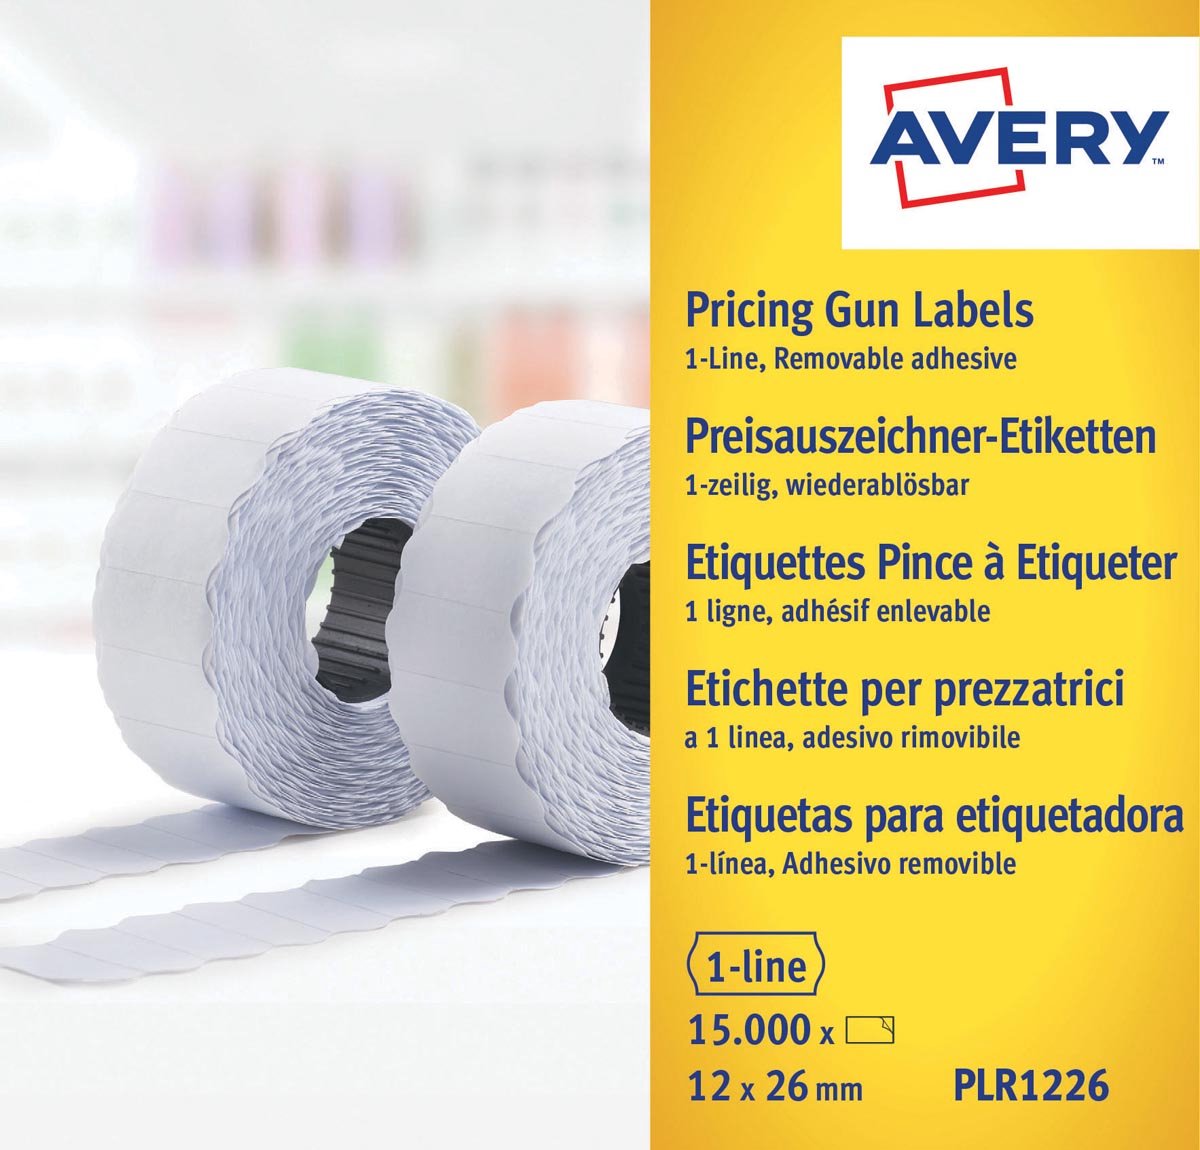 Avery-Zweckform Prijslabels PLR1226 Weer verwijderbaar Breedte etiket: 26 mm Hoogte etiket: 12 mm Wit 15000 stuk(s) - Avery-Zweckform